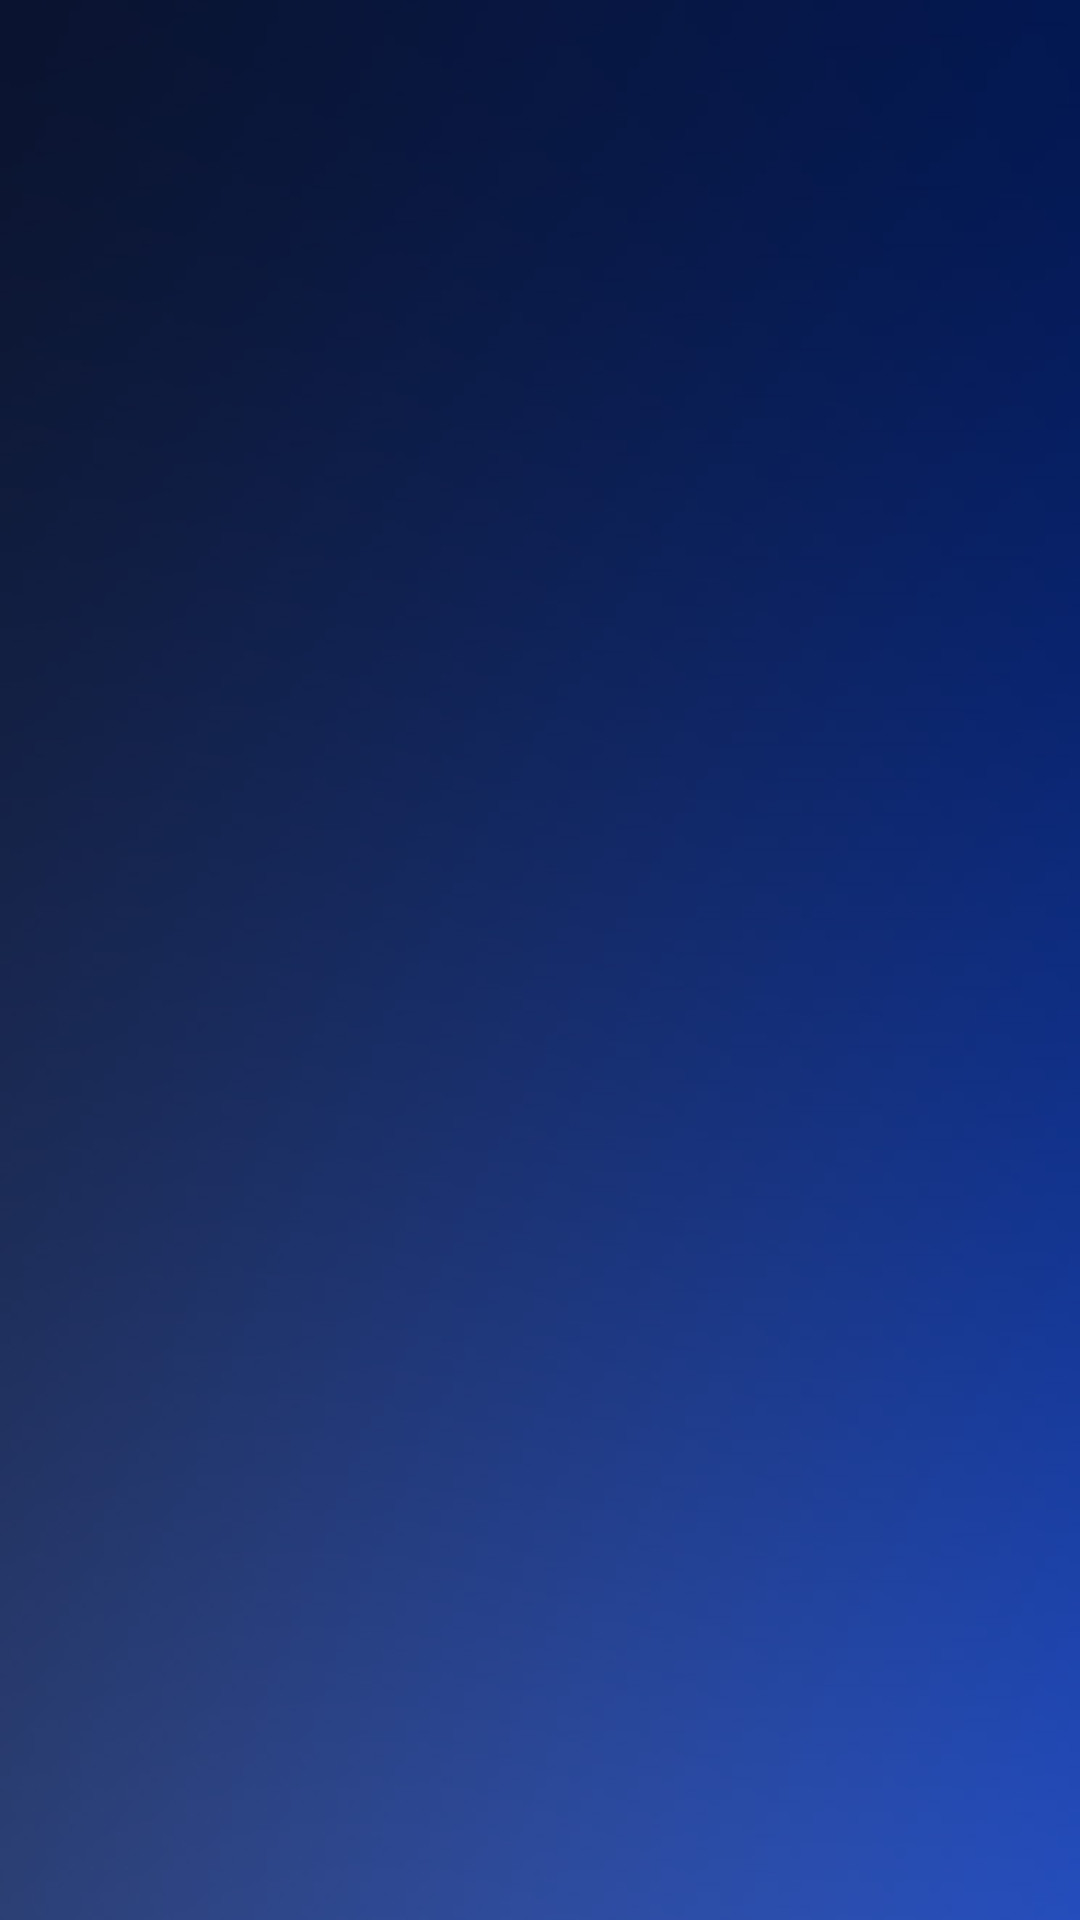 1080x1920 Pure-Dark-Blue-Ocean-Gradation-Blur-Background-iPhone-